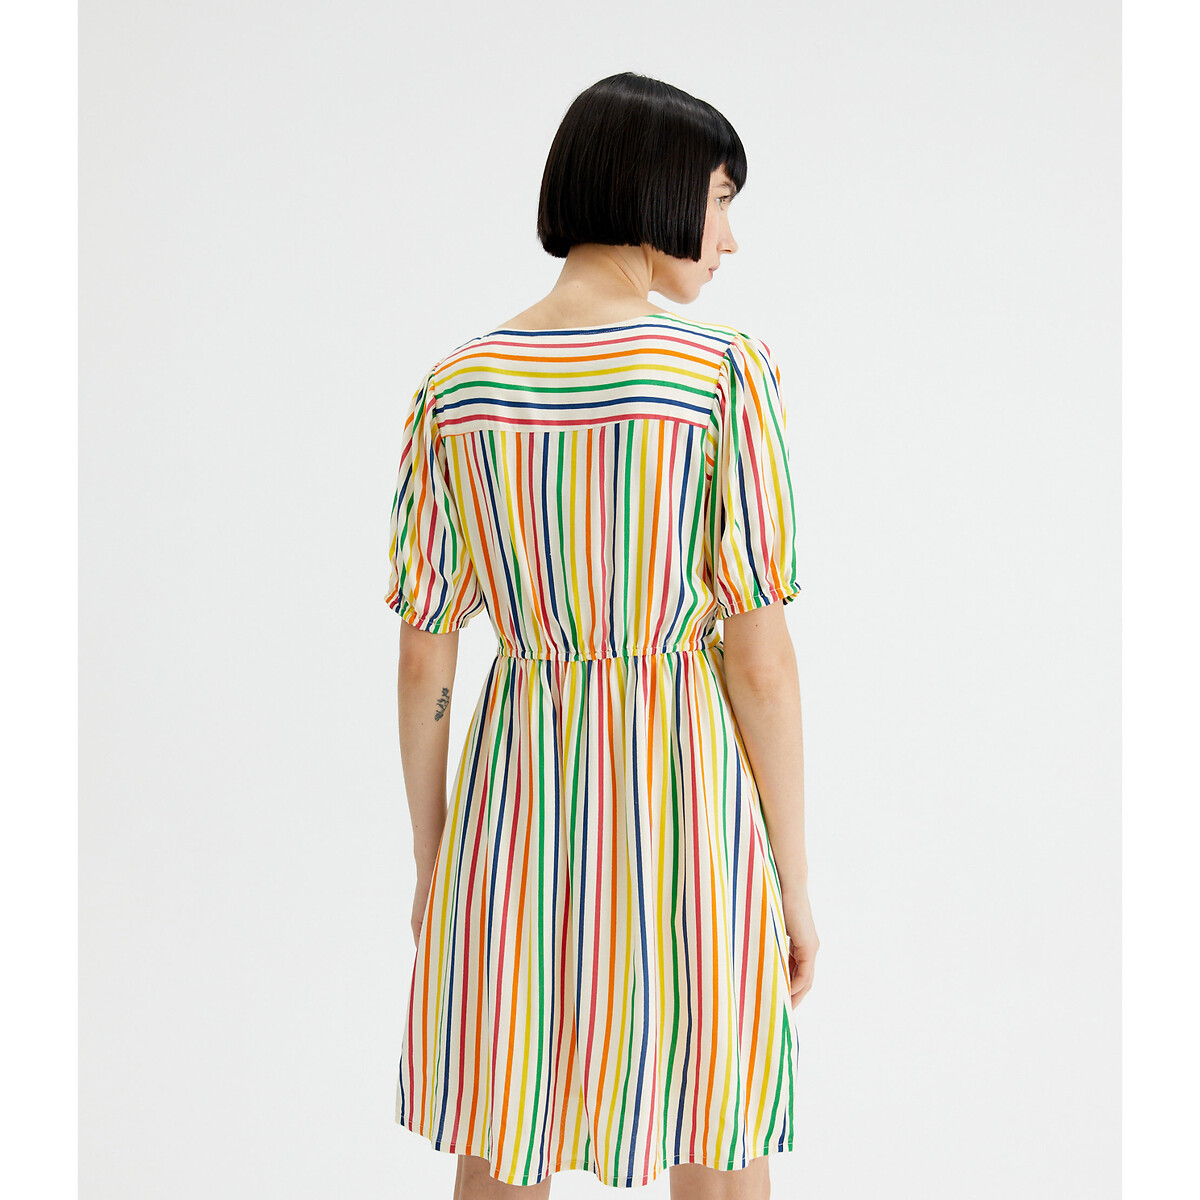 Платье С короткими рукавами в разноцветную полоску L разноцветный LaRedoute, размер L - фото 3